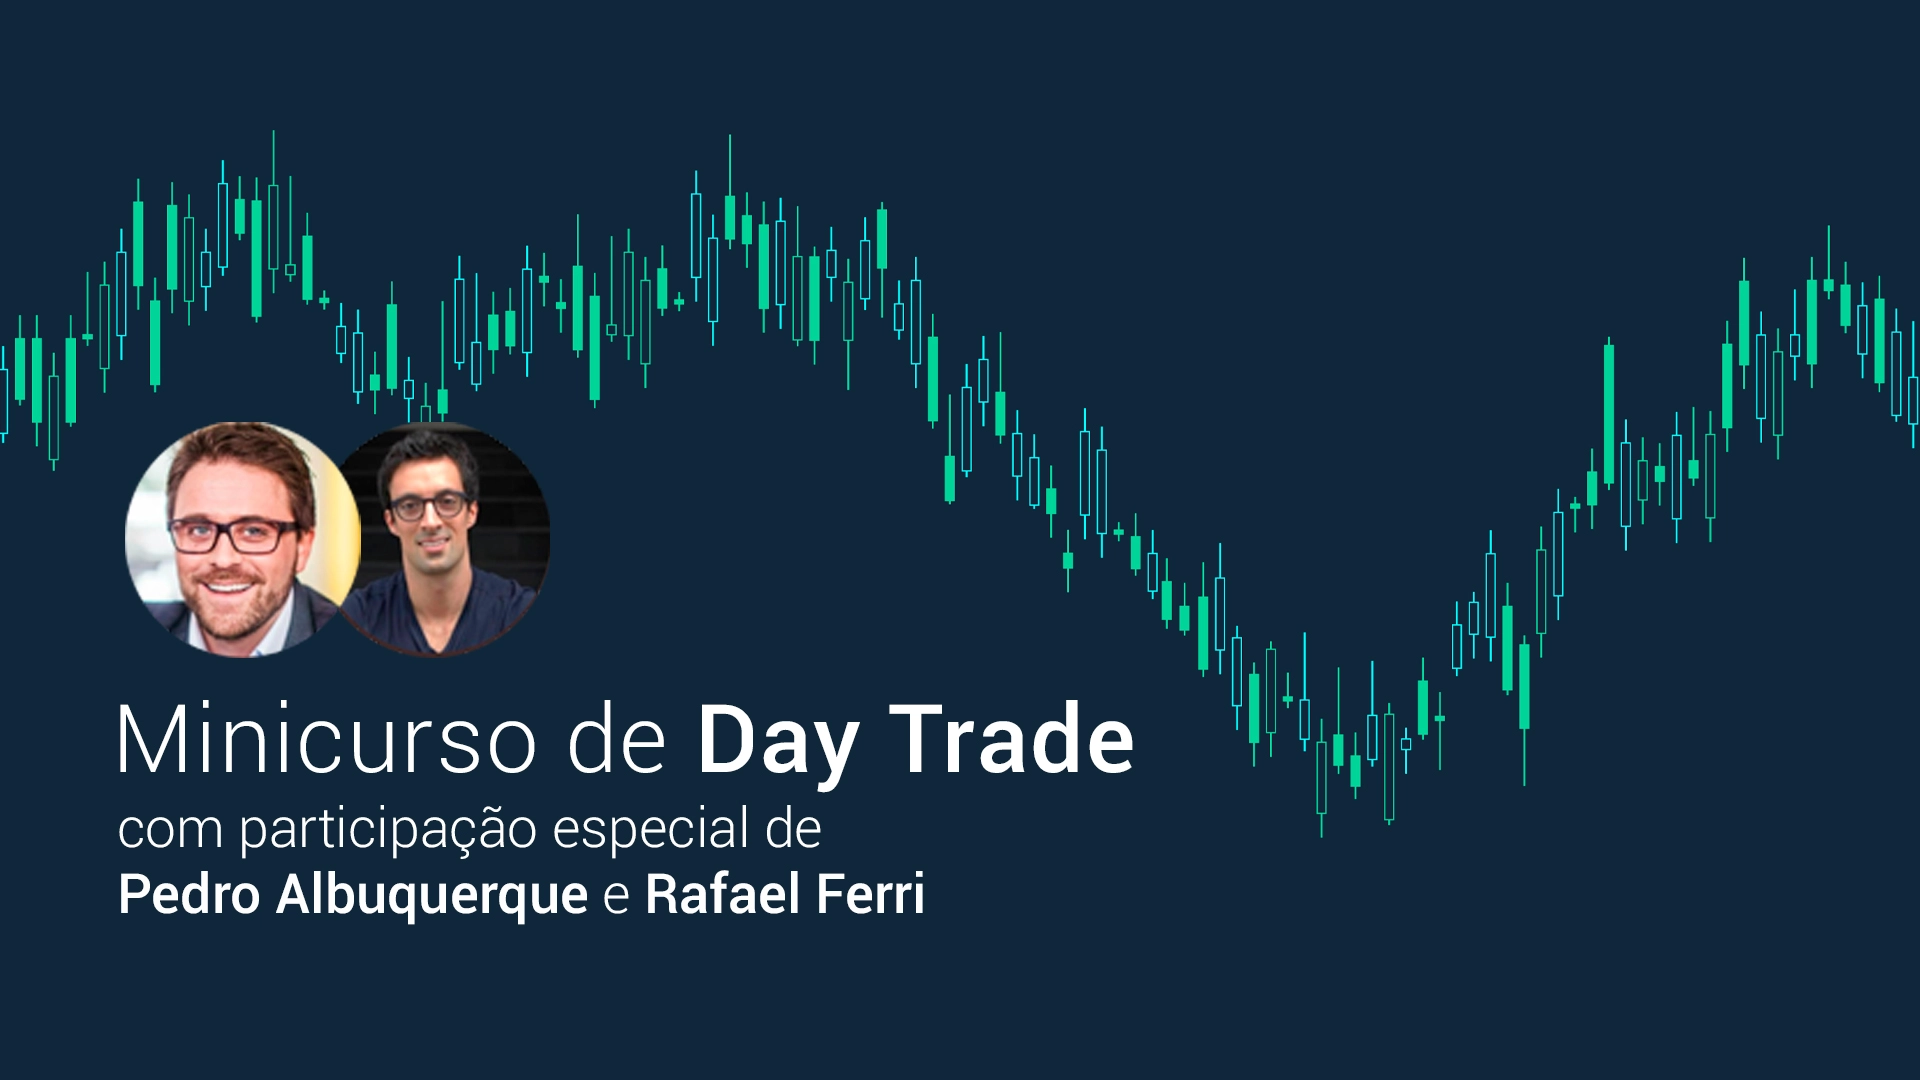 Rafael Ferri e Pedro Albuquerque - Minicurso de Day Trade